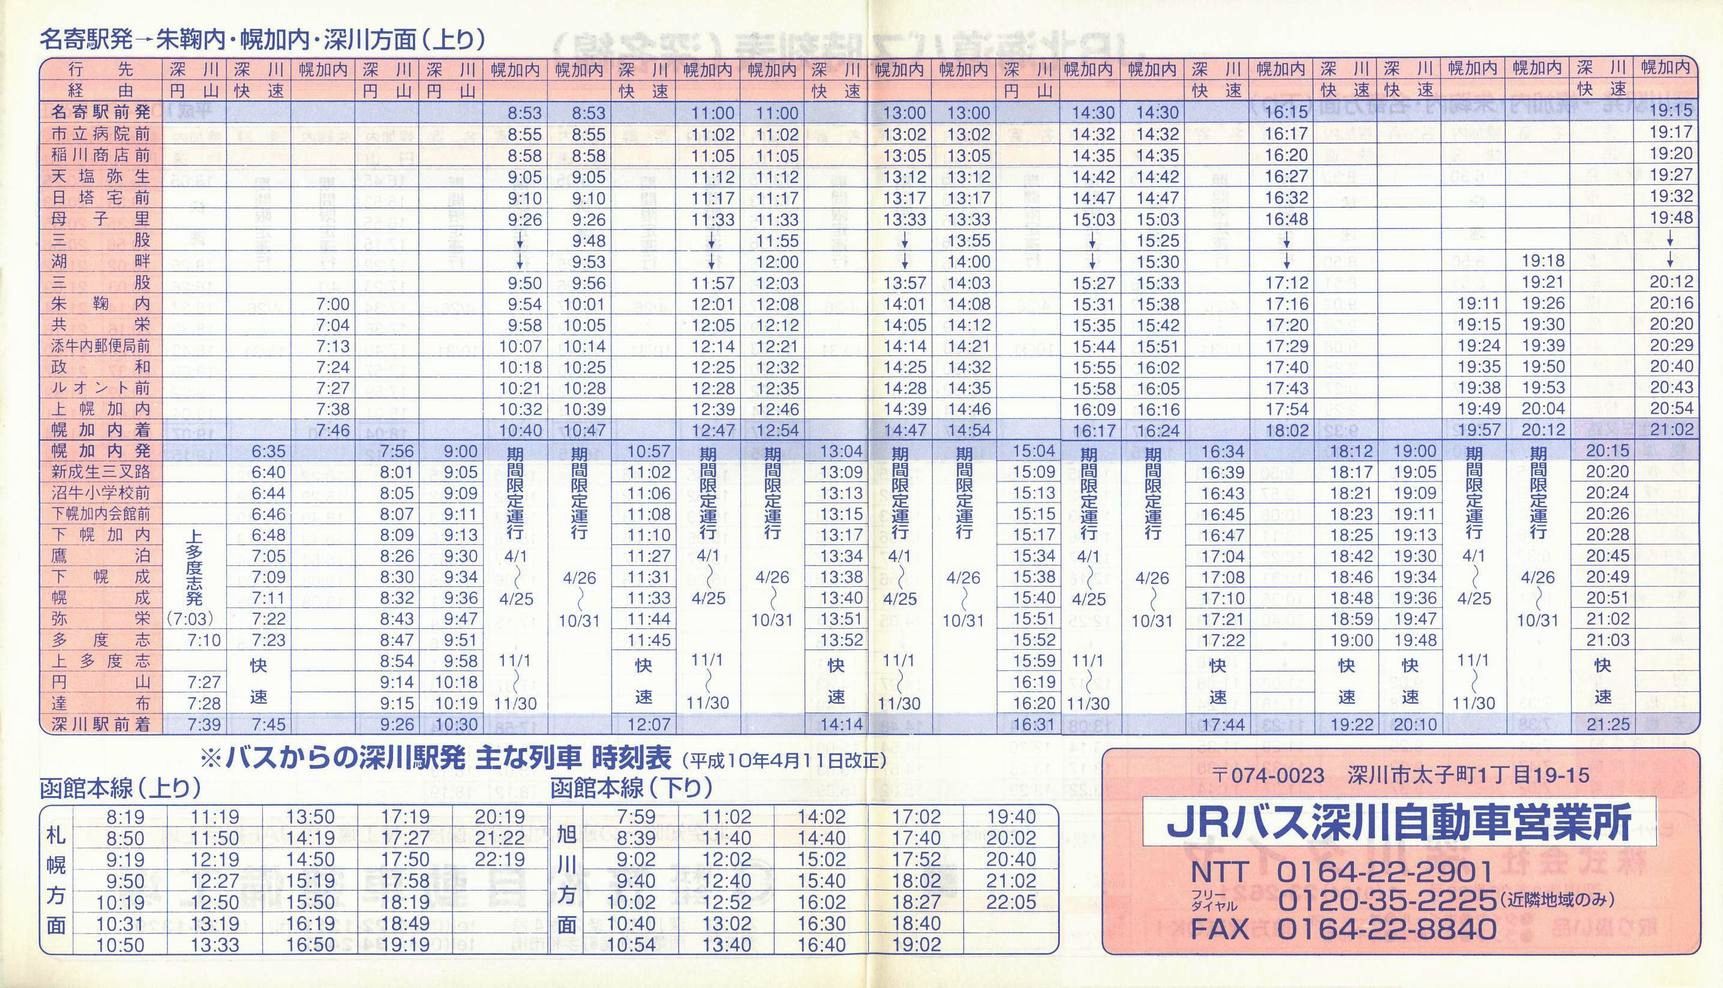 1998-04-01改正_ＪＲ北海道バス_深名線時刻表裏面